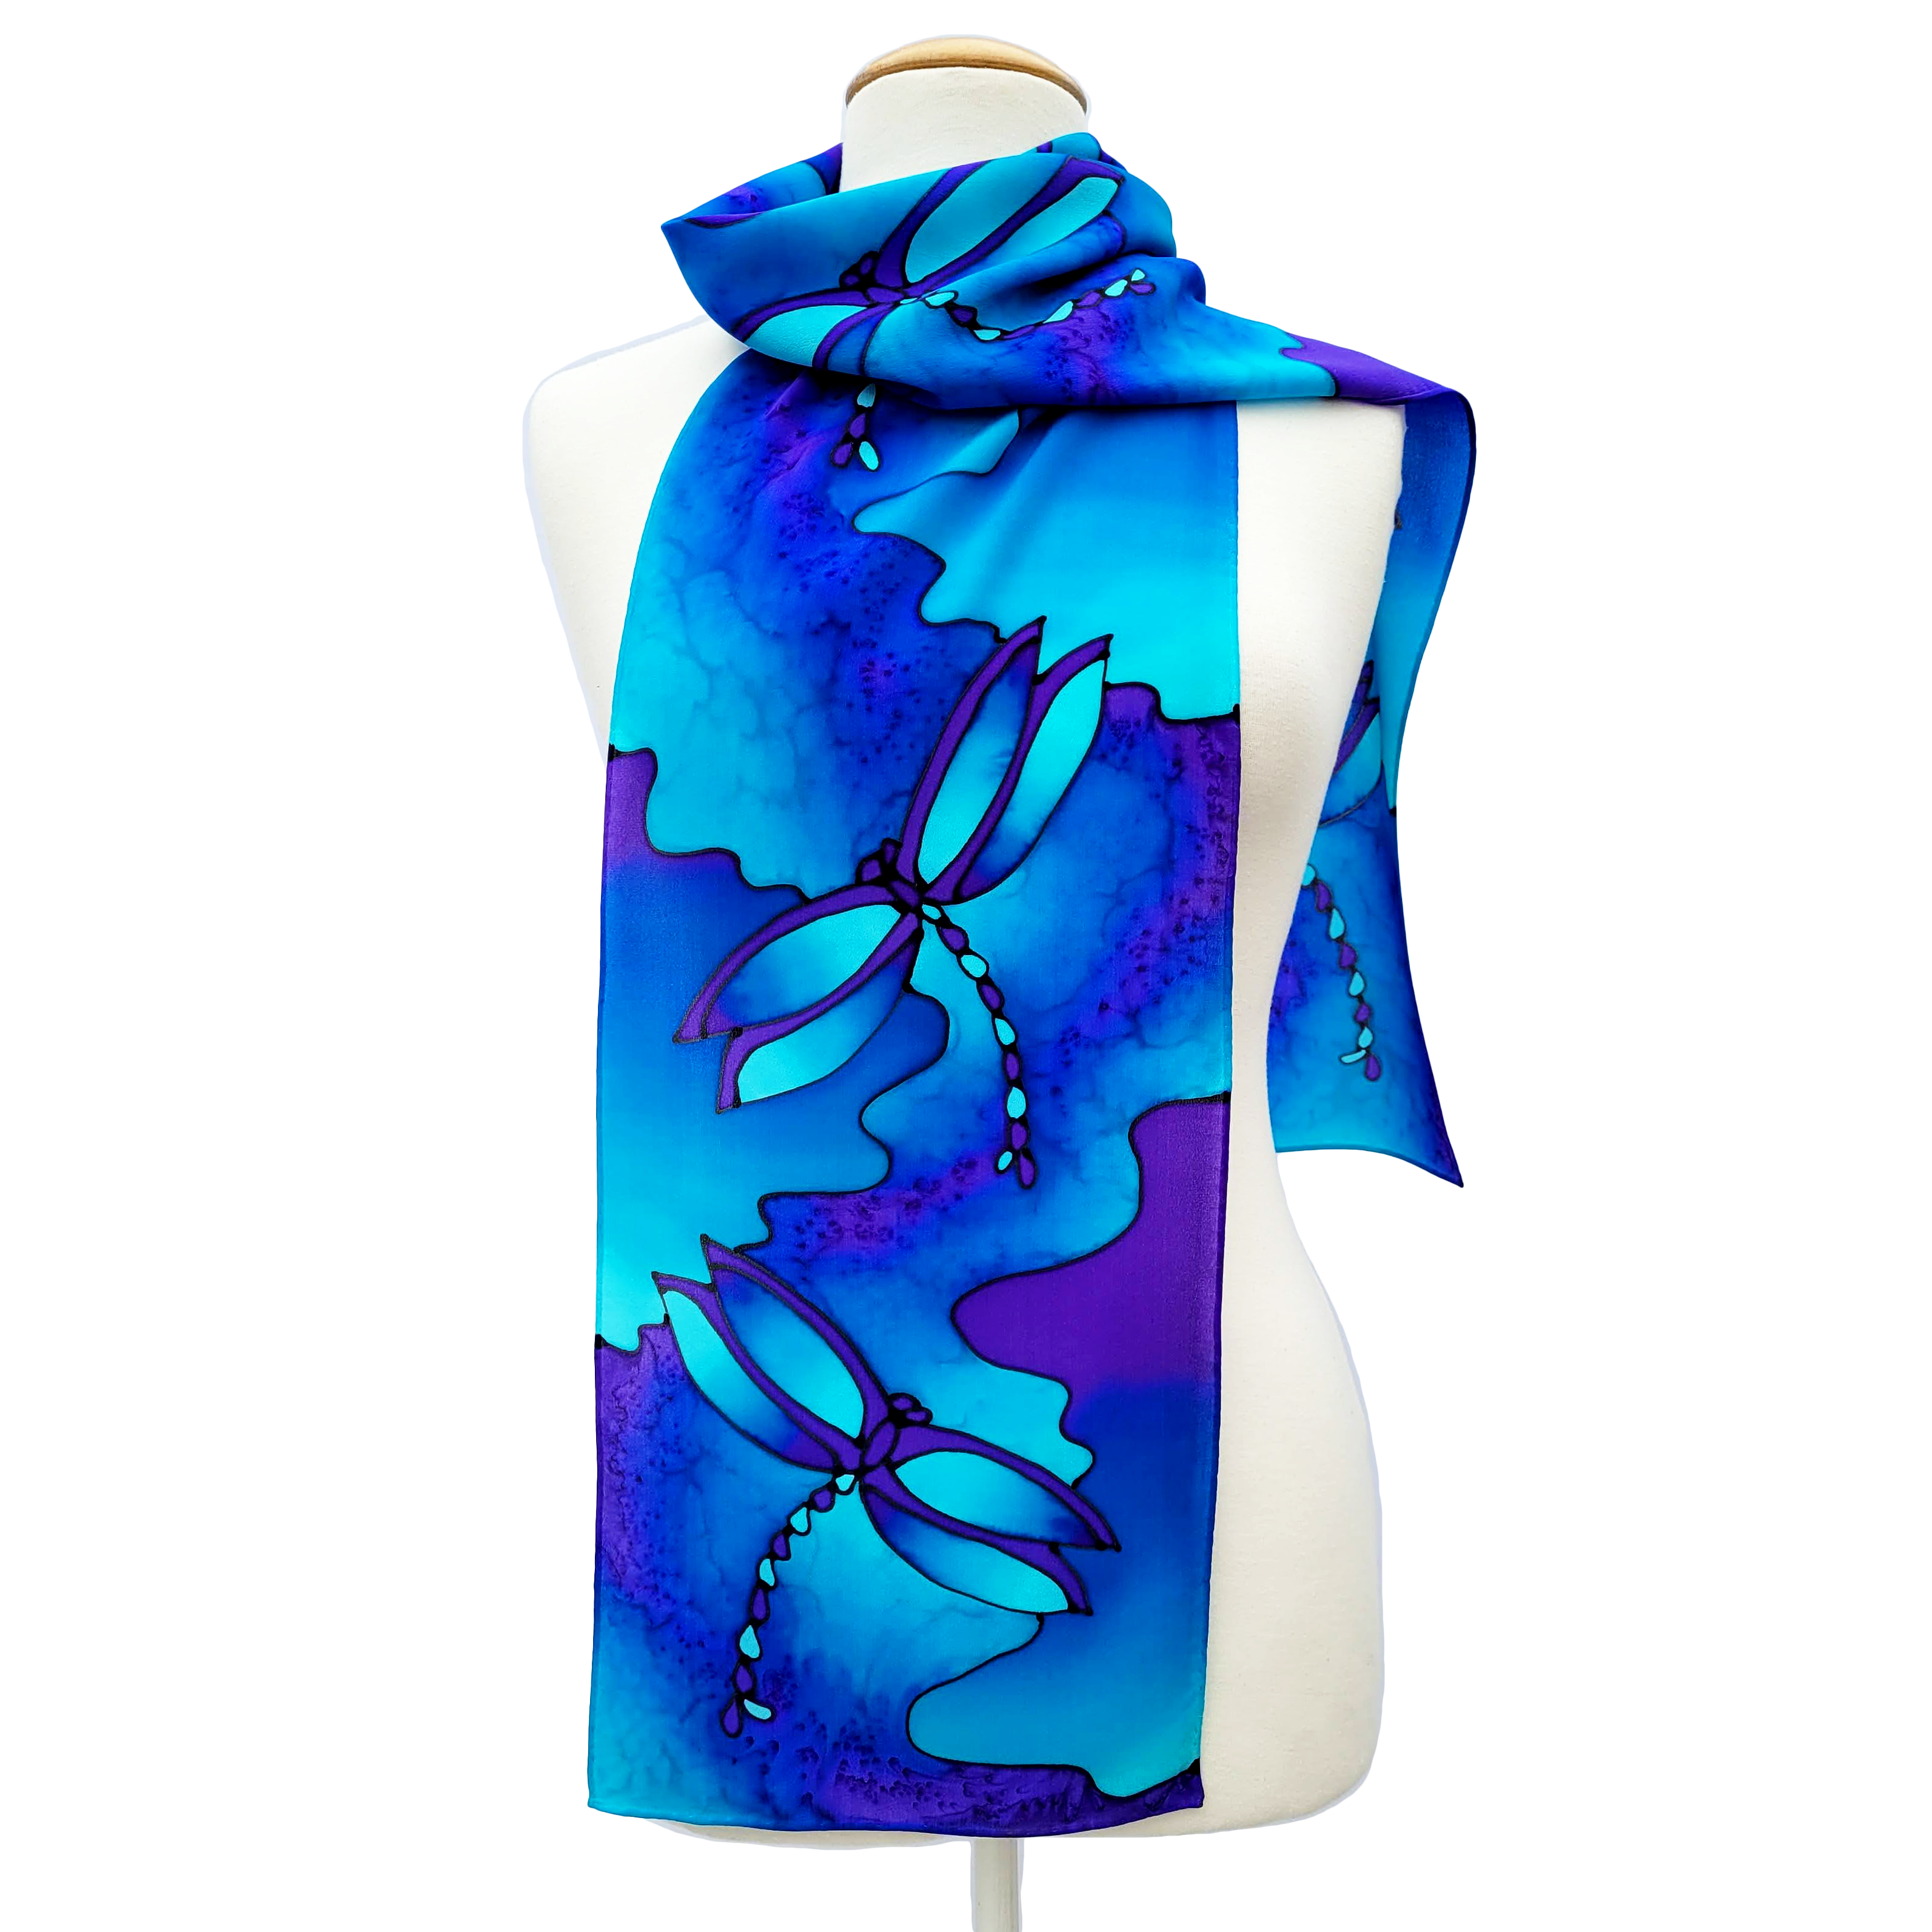 silk clothing accessory hand painted blue scarf dragonfly art design handmade by Lynne Kiel